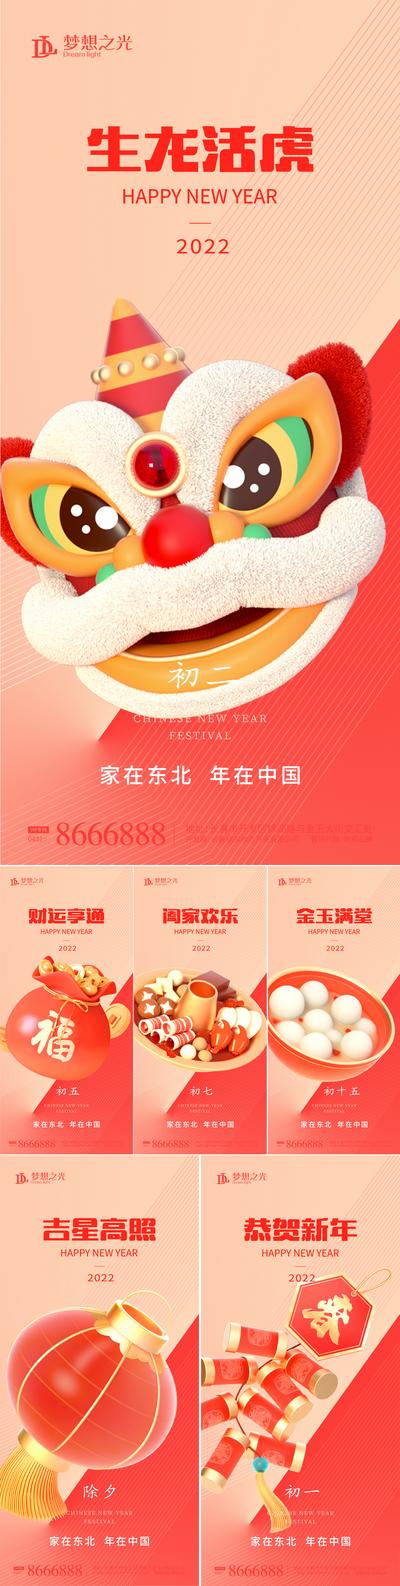 南门网 海报 中国传统节日 新年 春节 小年 除夕 初一 初七 元宵节 卡通 老虎